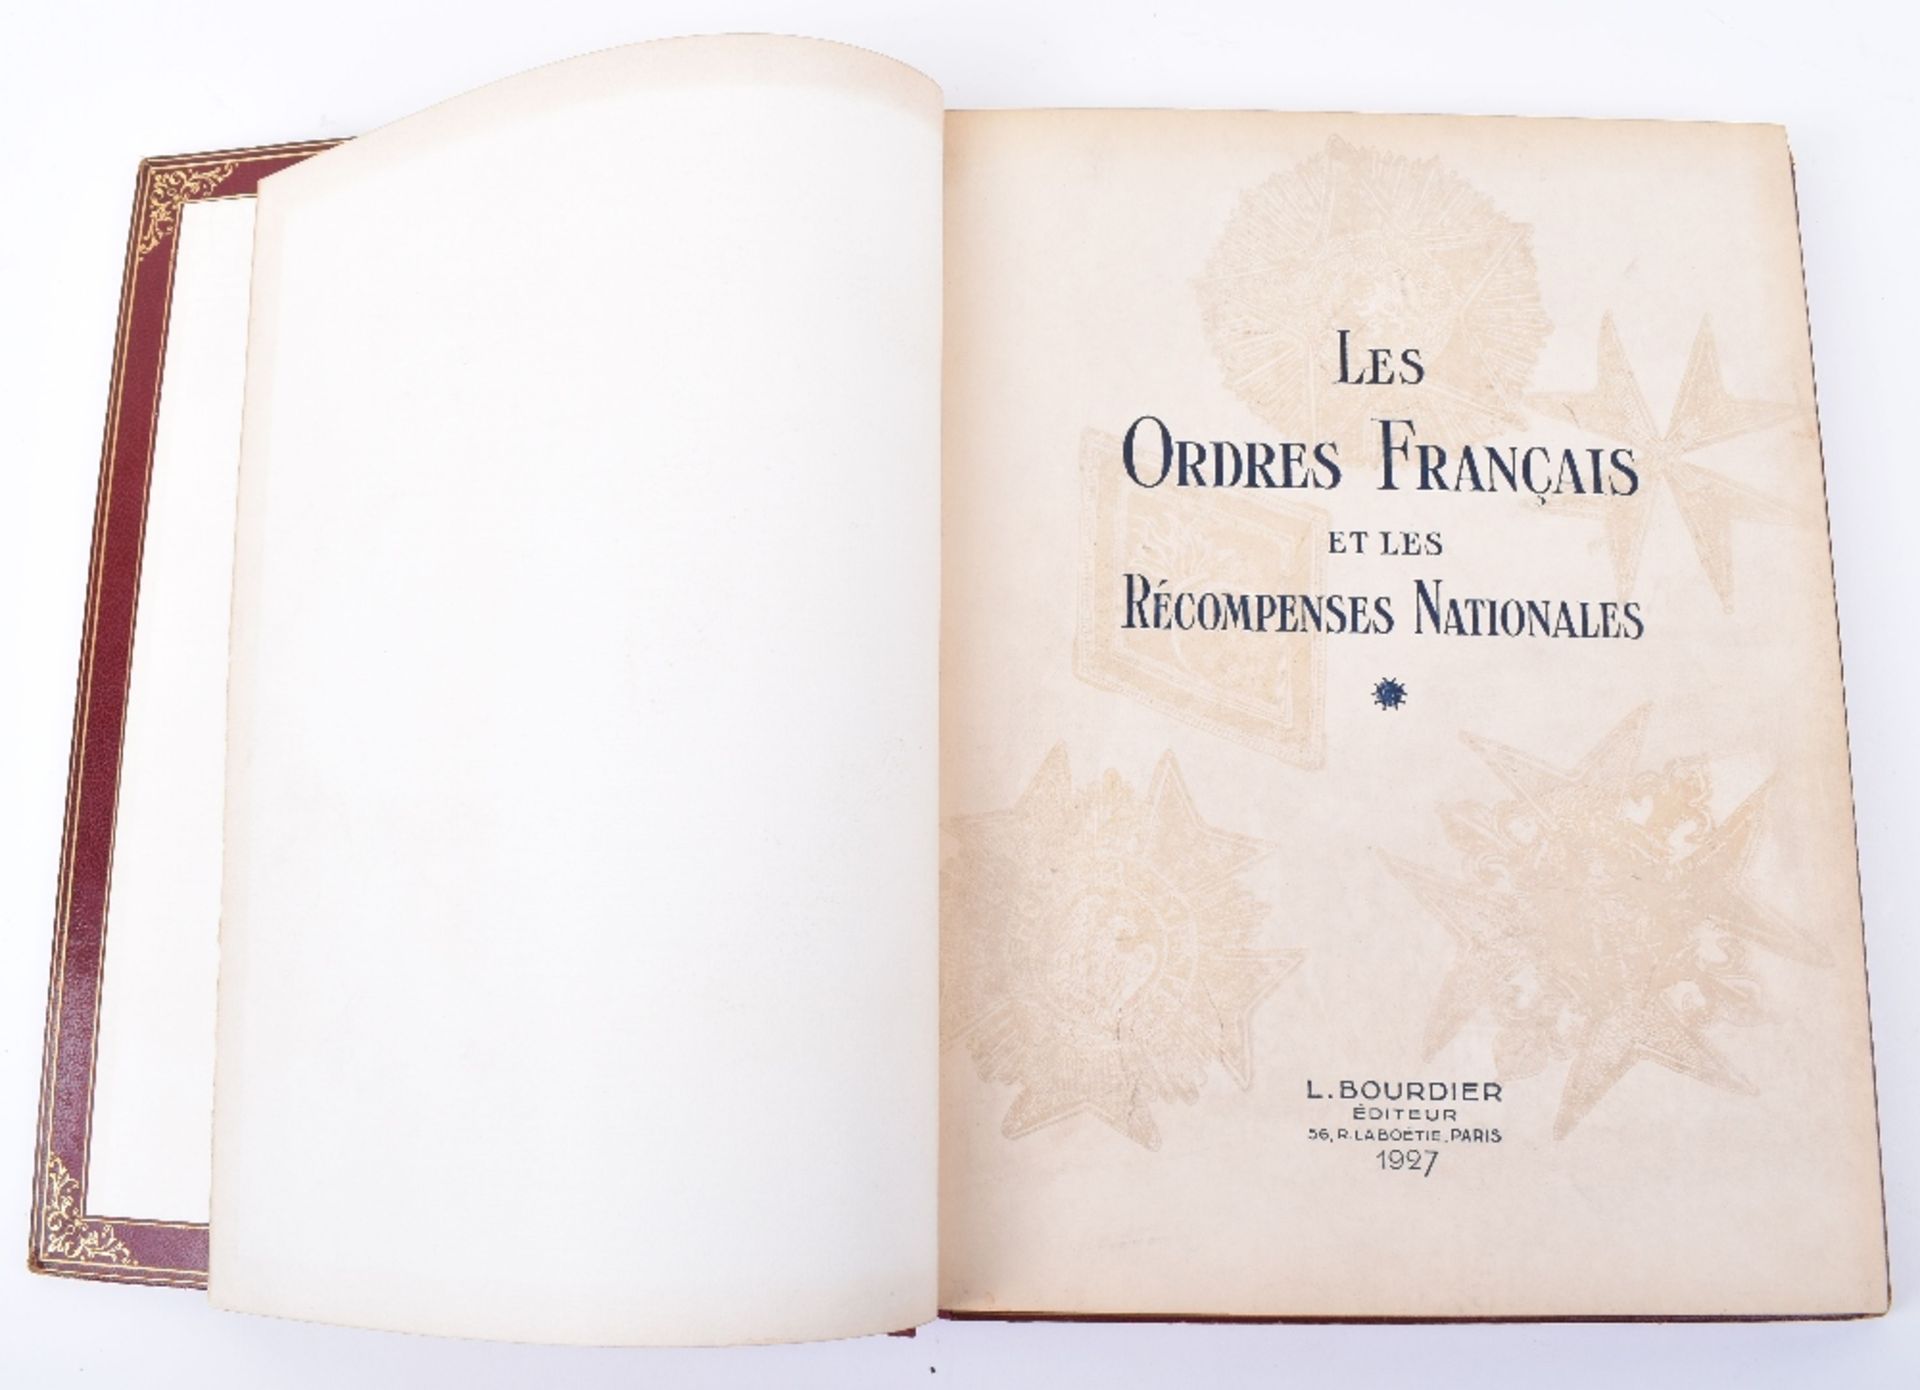 Les Ordres Francais et les Recompenses Nationales, L.Bourdier 1st Edition 1927. - Image 3 of 5